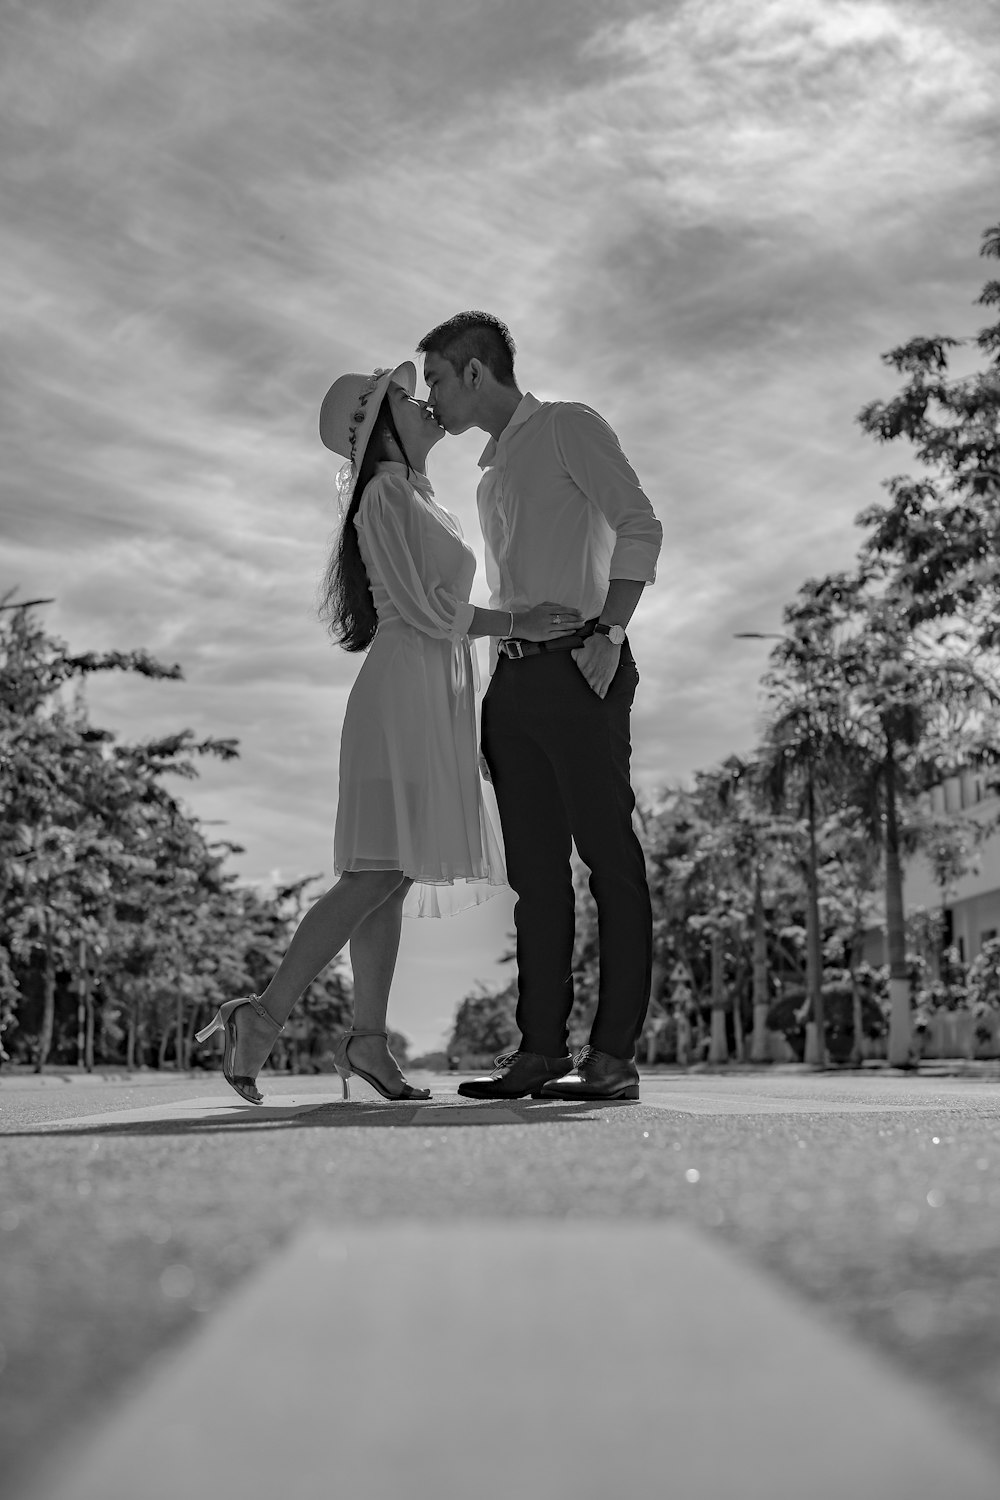 Mann und Frau küssen sich auf der Straße in Graustufenfotografie